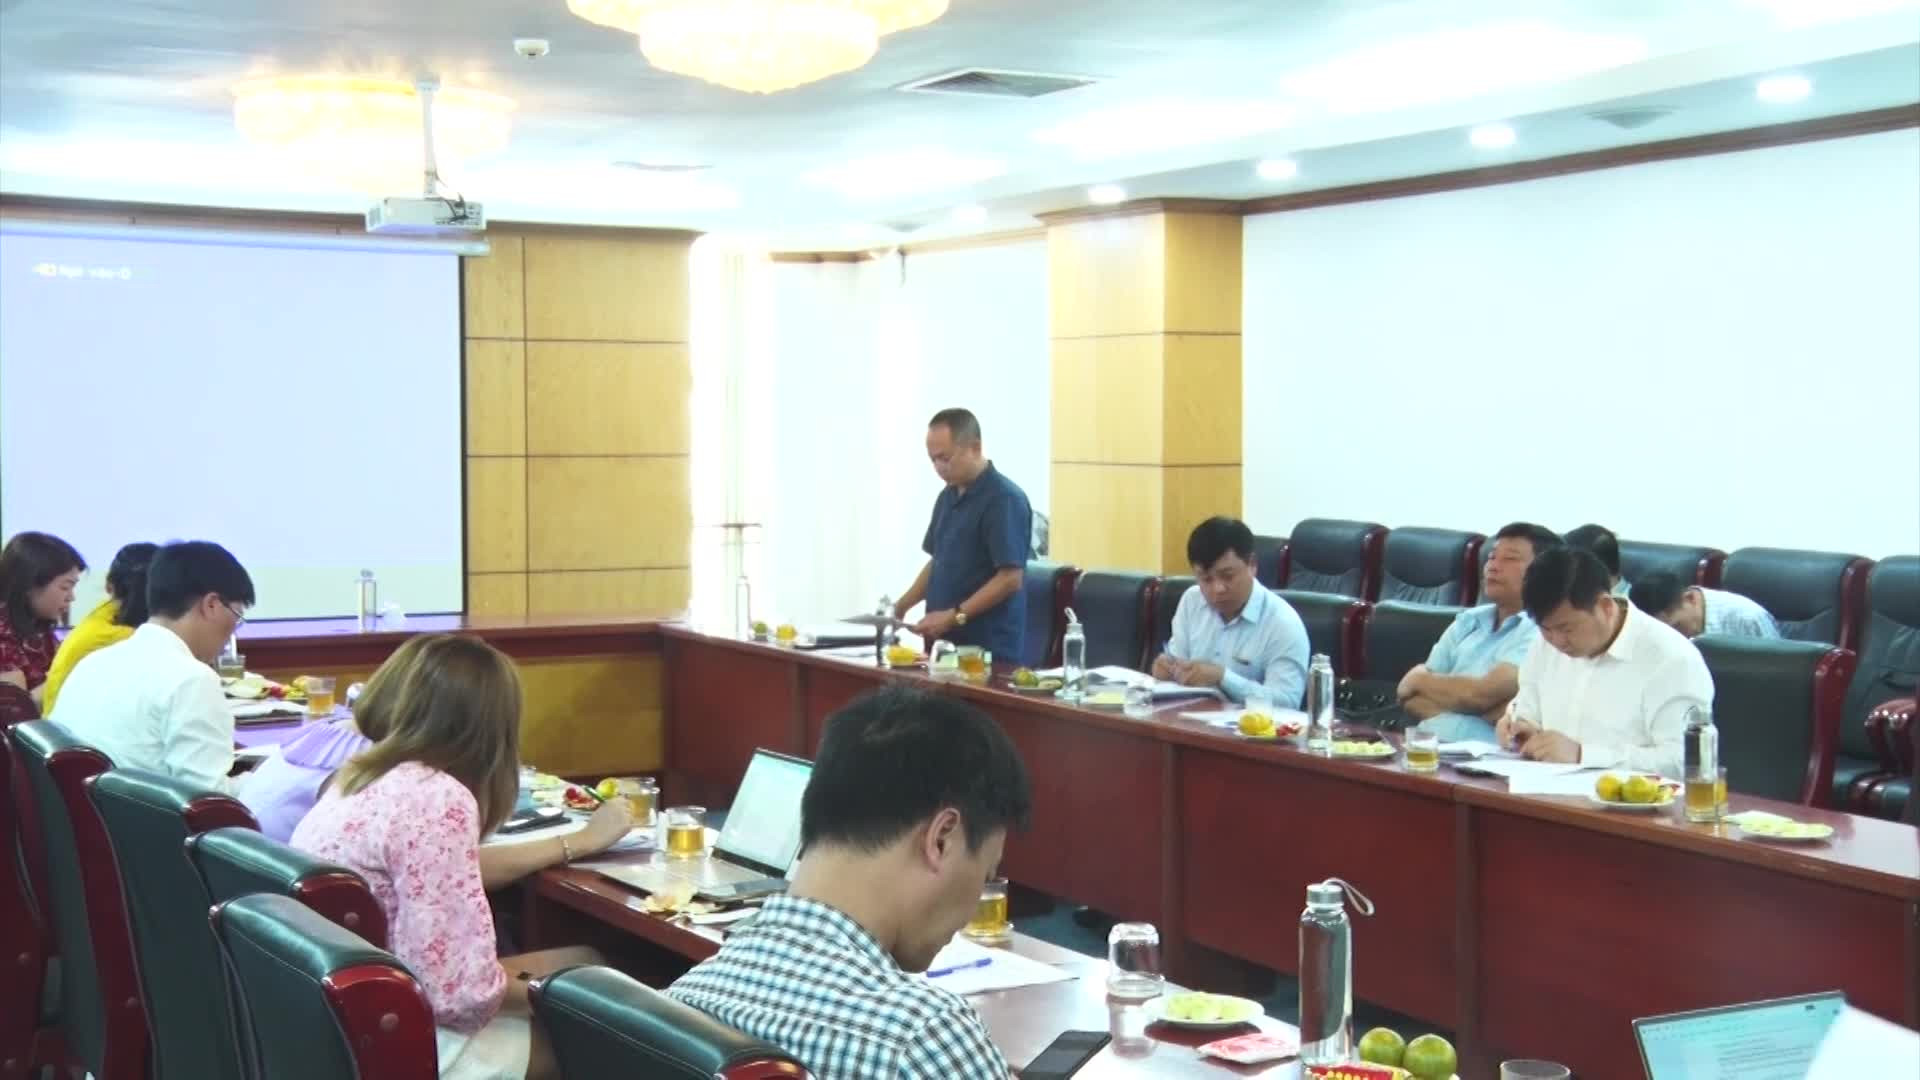 Thẩm định hồ sơ chuyển mục đích sử dụng đất để thực hiện dự án tại Bắc Ninh và Ninh Bình